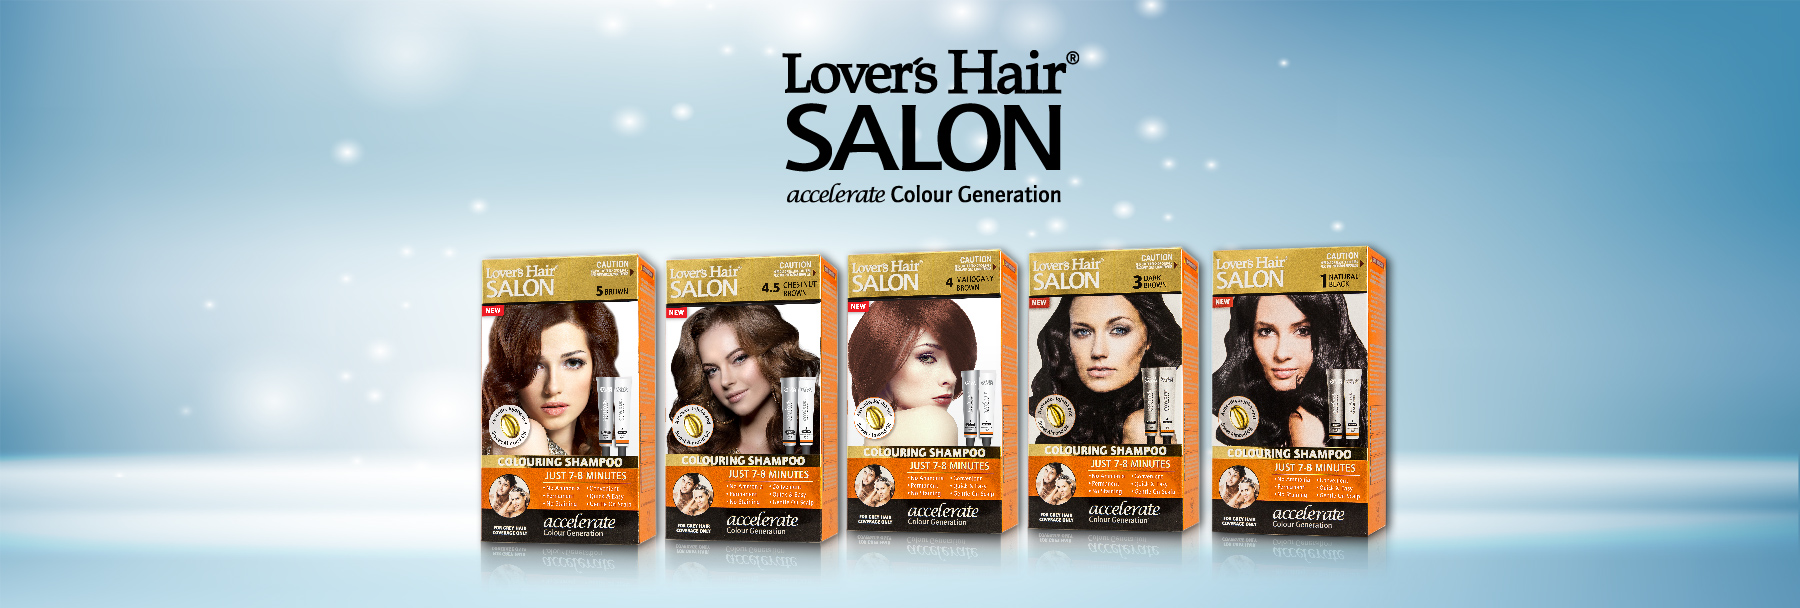 LOVER'S HAIR SALON-COLOURING SHAMPOO-2 x 2.0 oz (60ML) CHESTNUT BROWN No.4.5